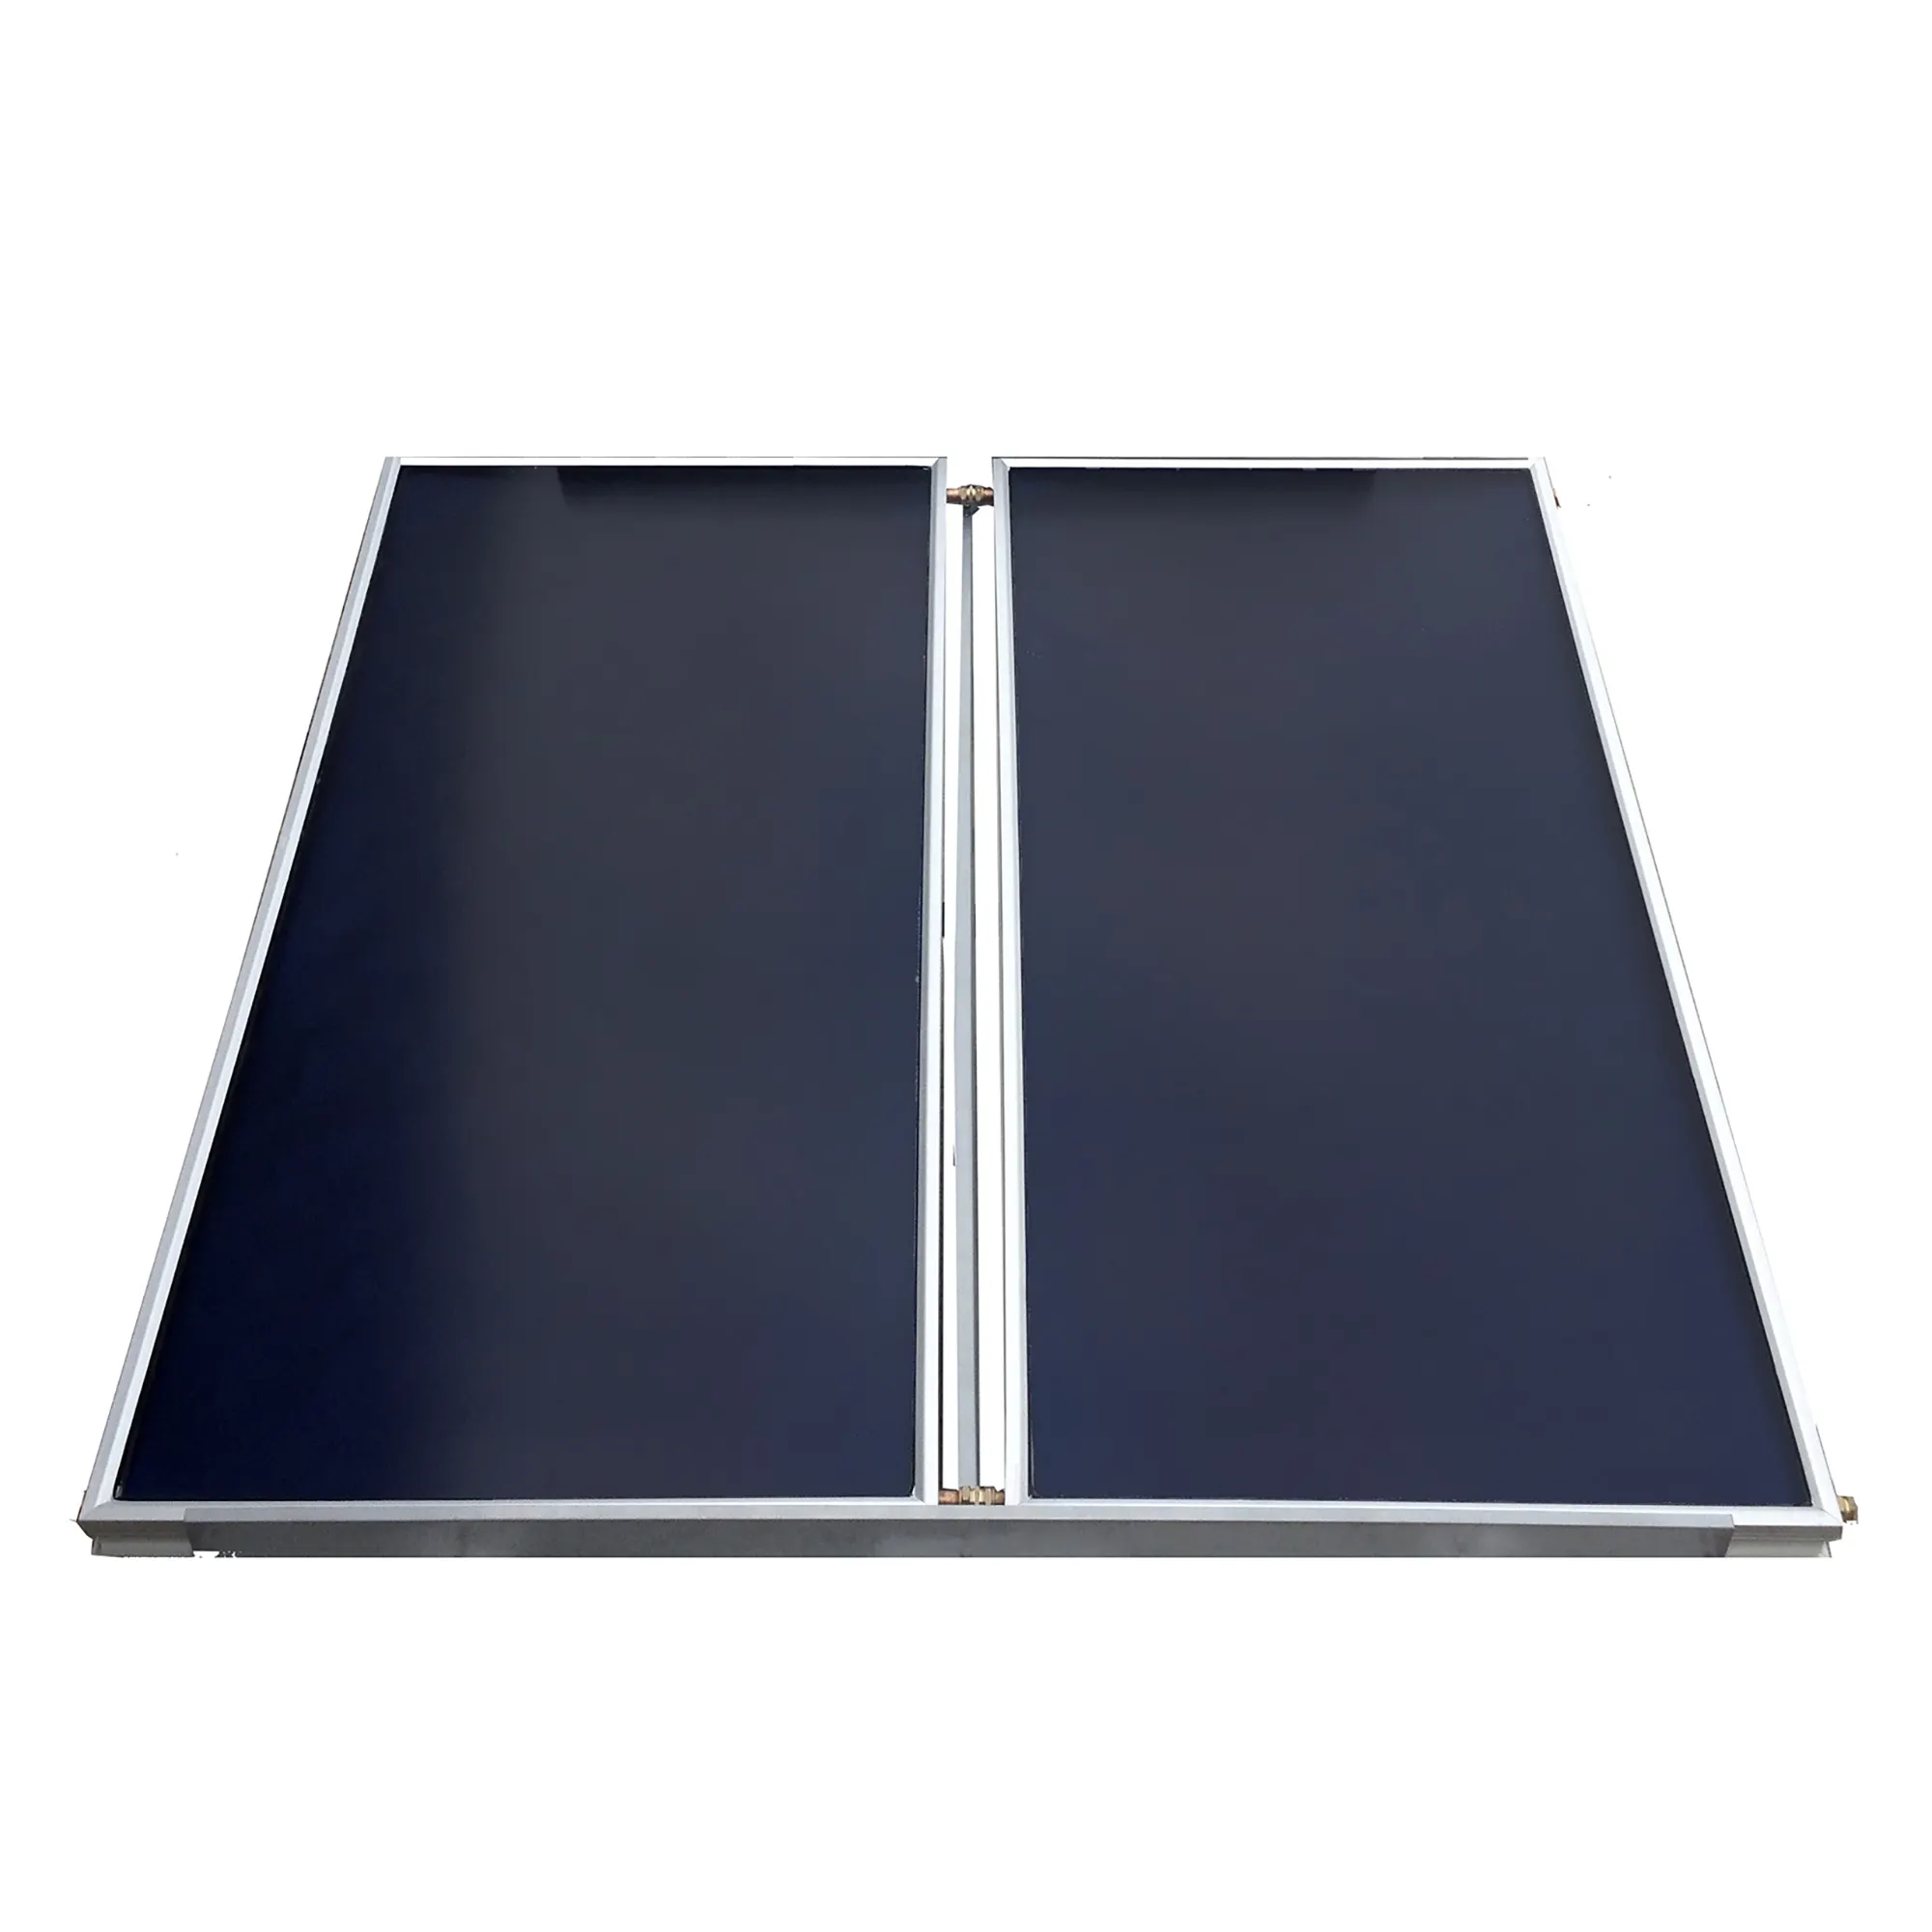 Green Energy Products Colector de placa plana Sistema de energía de panel térmico solar para electrodomésticos